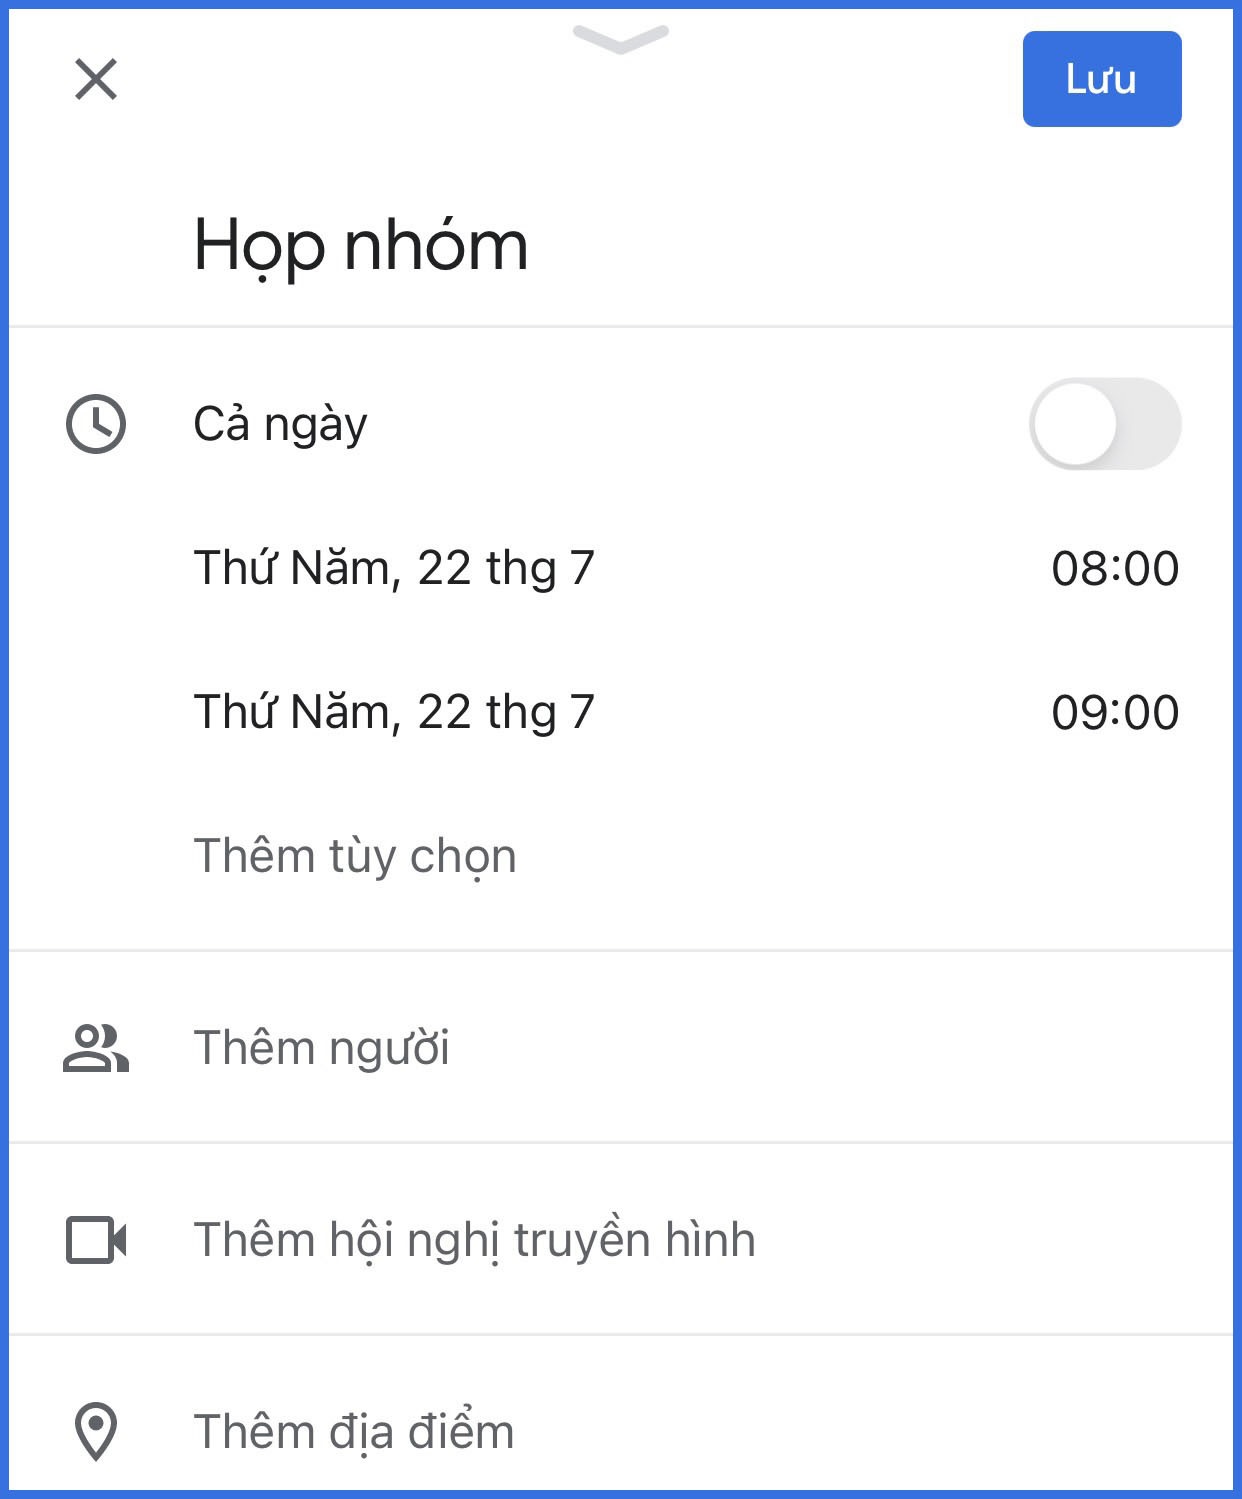 Cách sử dụng Google Calendar trên điện thoại